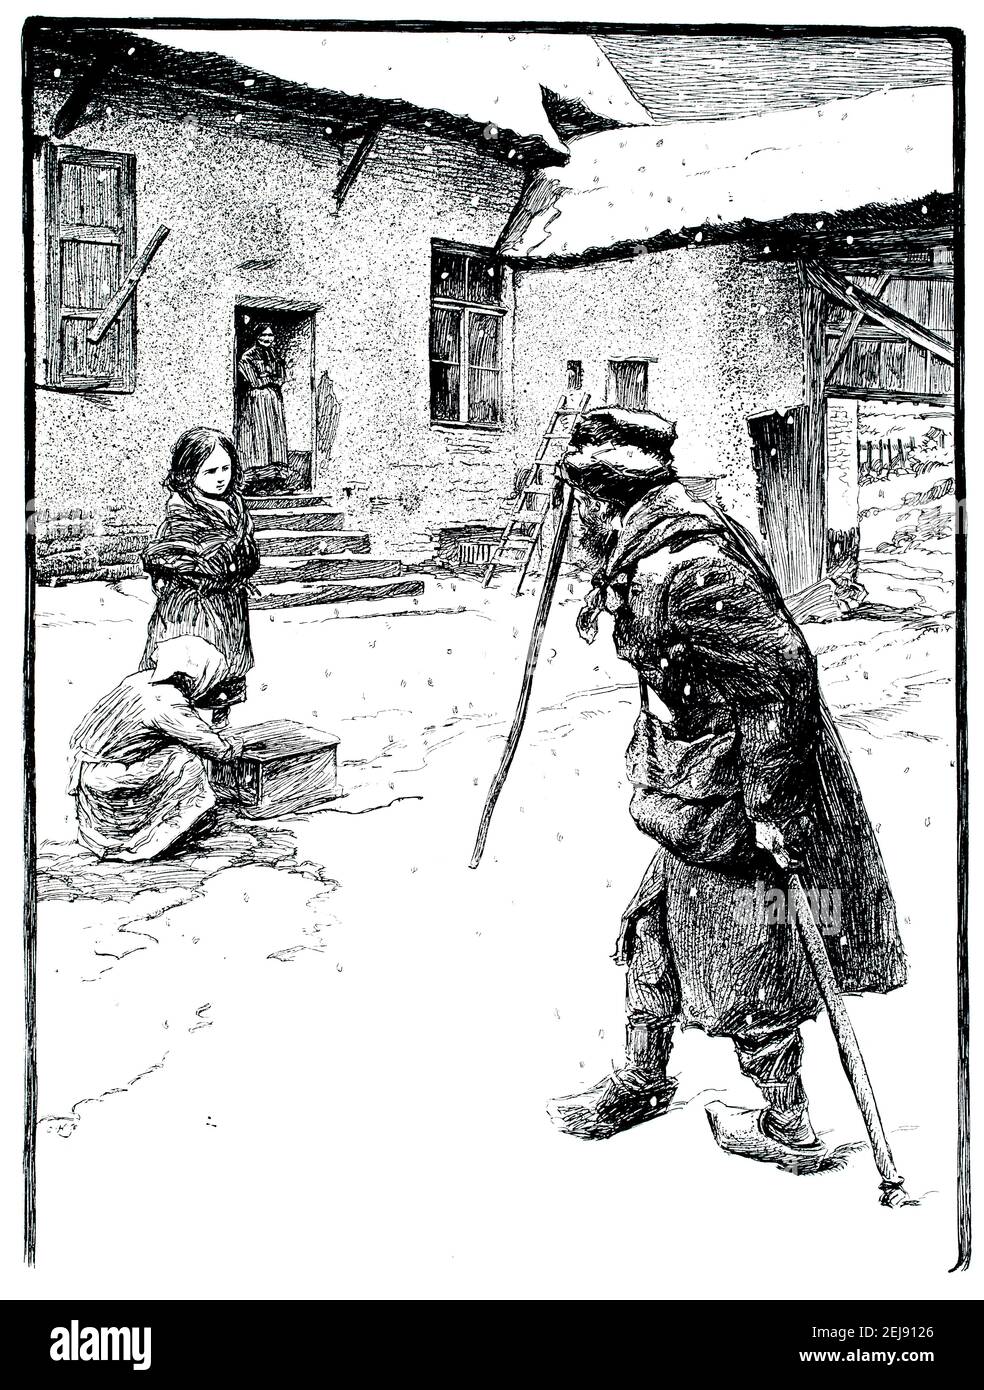 Hiver dans le quartier pauvre de Bruxelles, illustration par François Gaillard (1861-1932) de 1899 The Studio an Illustrated Magazine of Fine and appli Banque D'Images